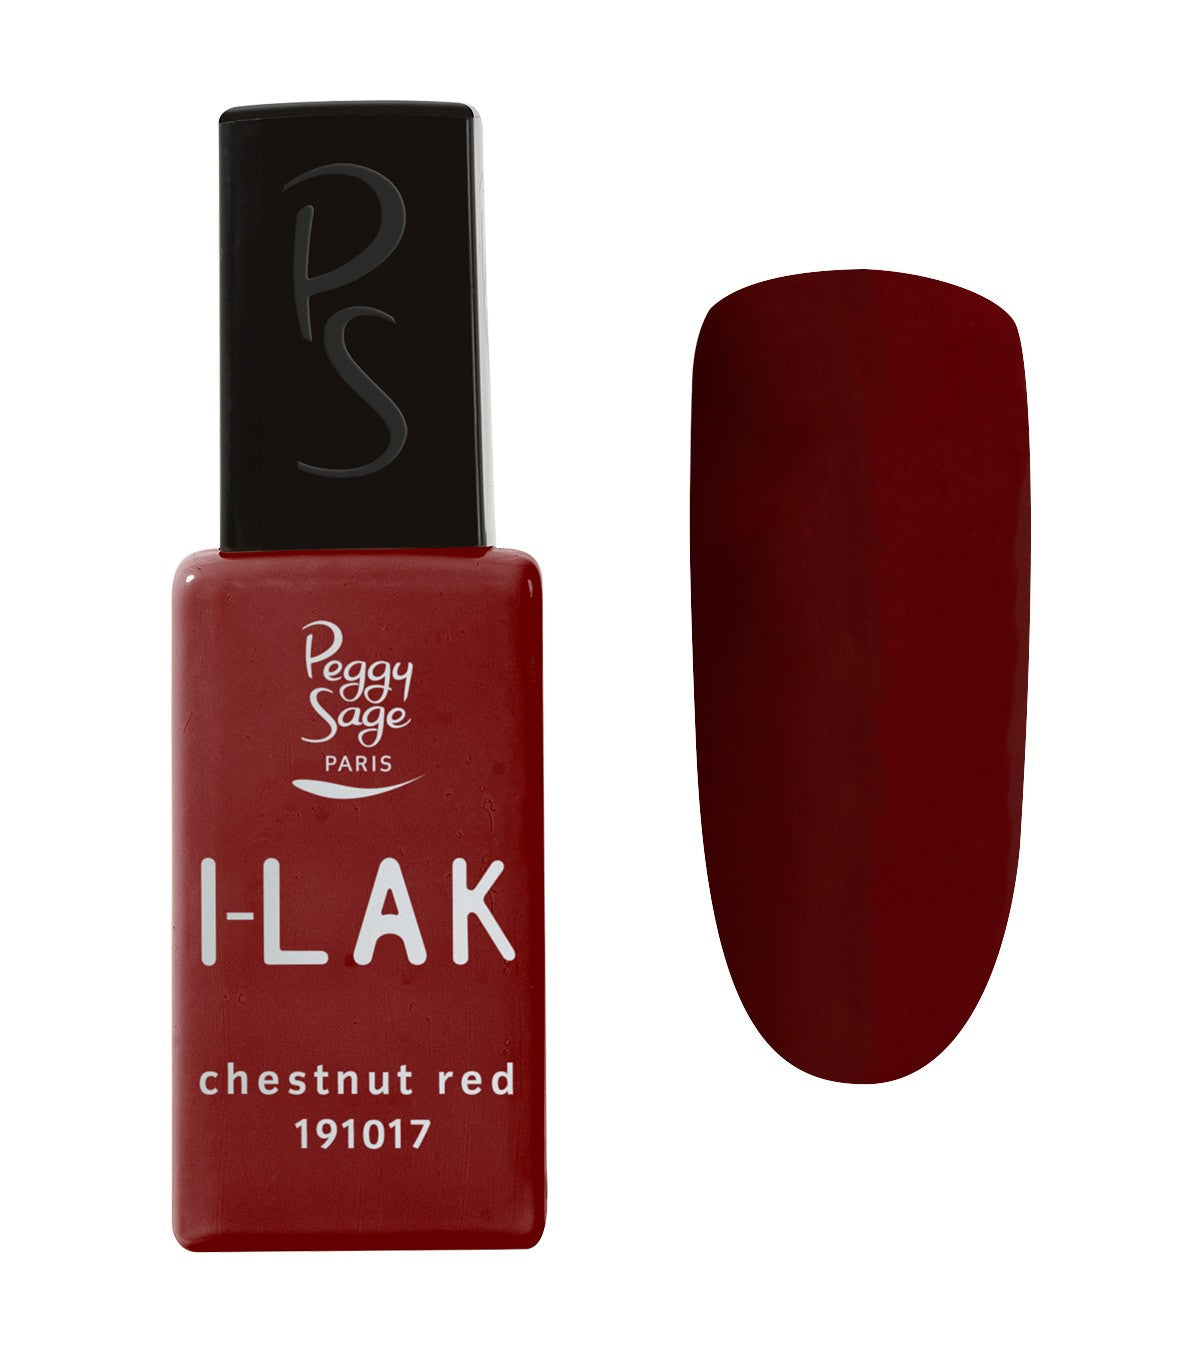 I-LAK Chestnut Red Ref 191017